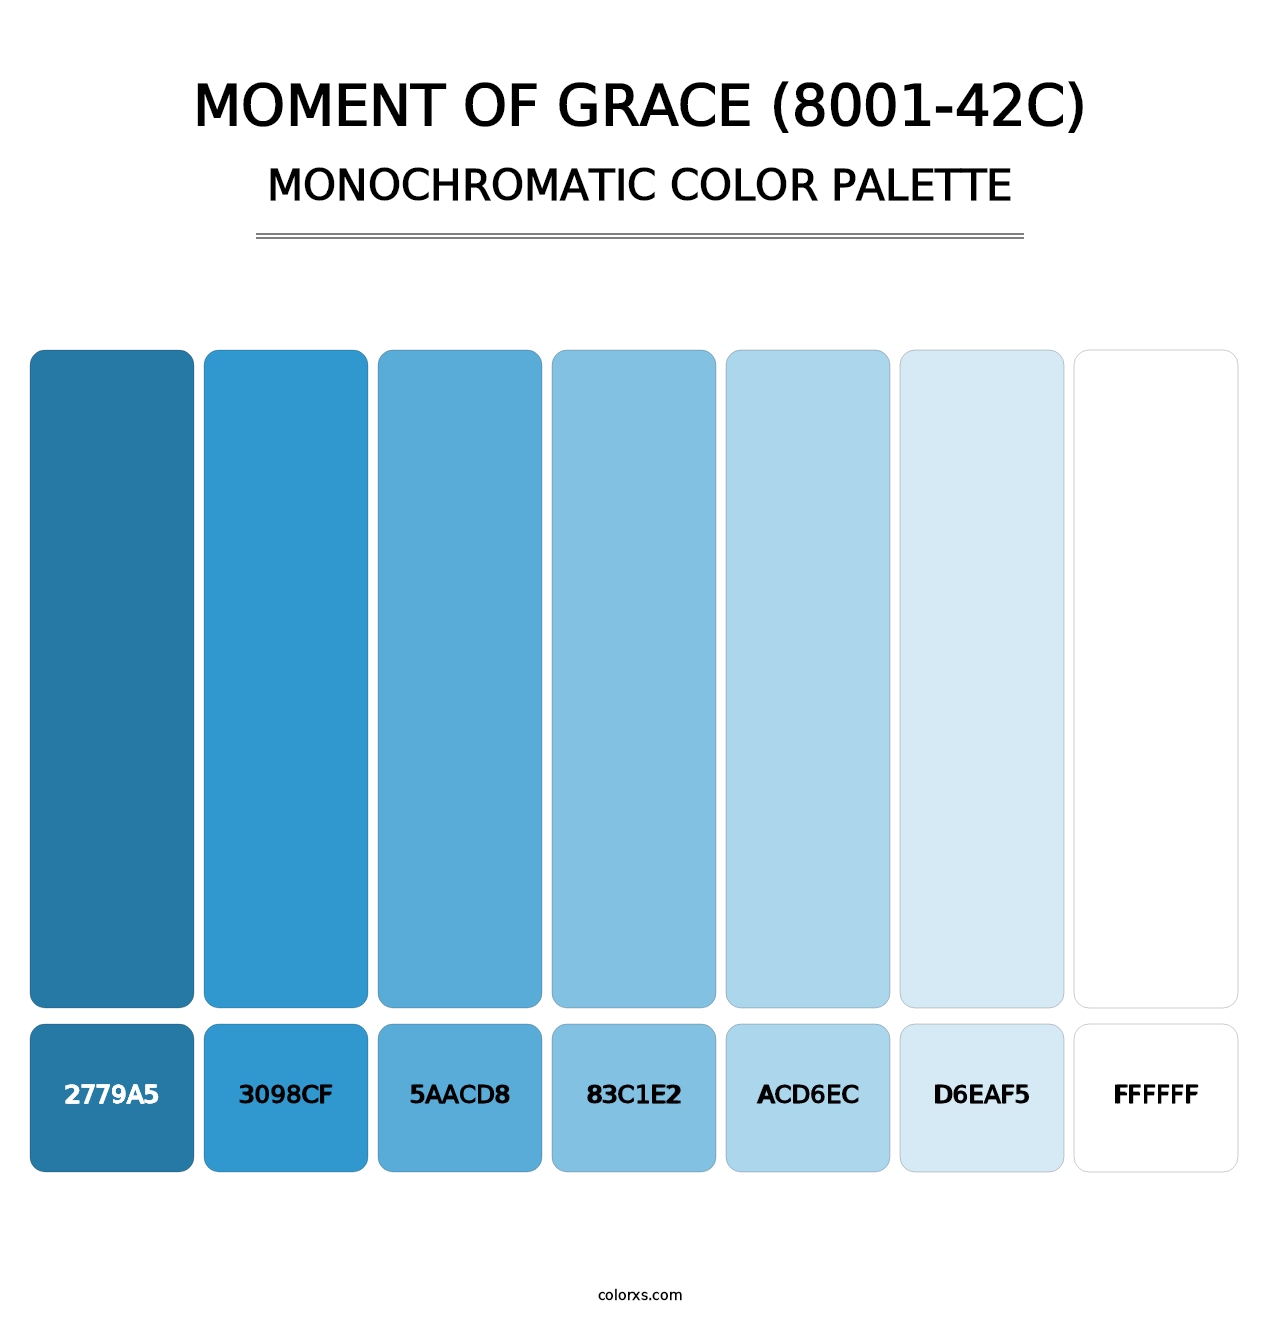 Moment of Grace (8001-42C) - Monochromatic Color Palette